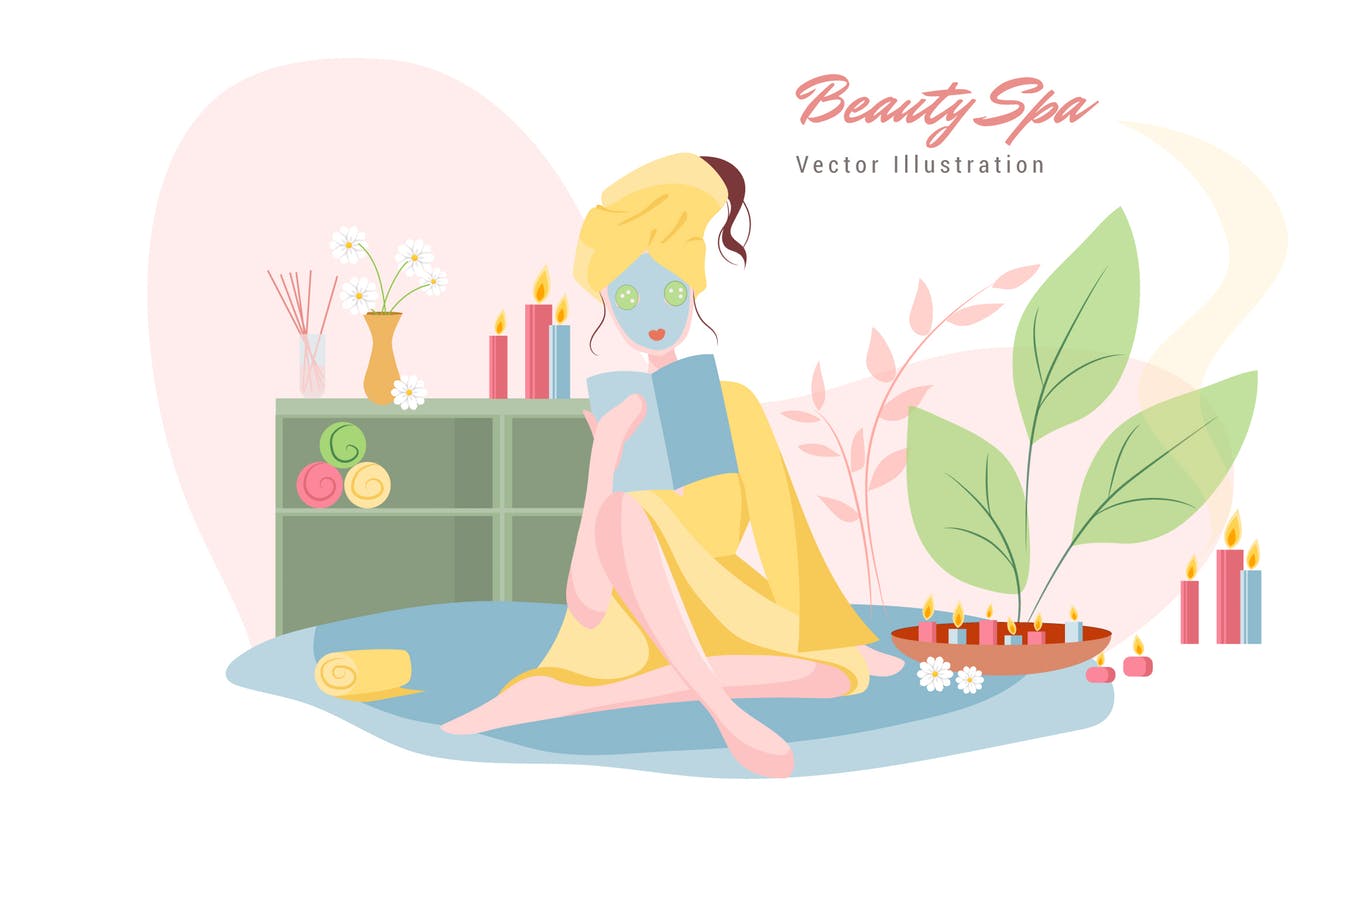 美容SPA主题矢量插画素材库精选设计素材v7 Beauty Spa Vector Illustration插图